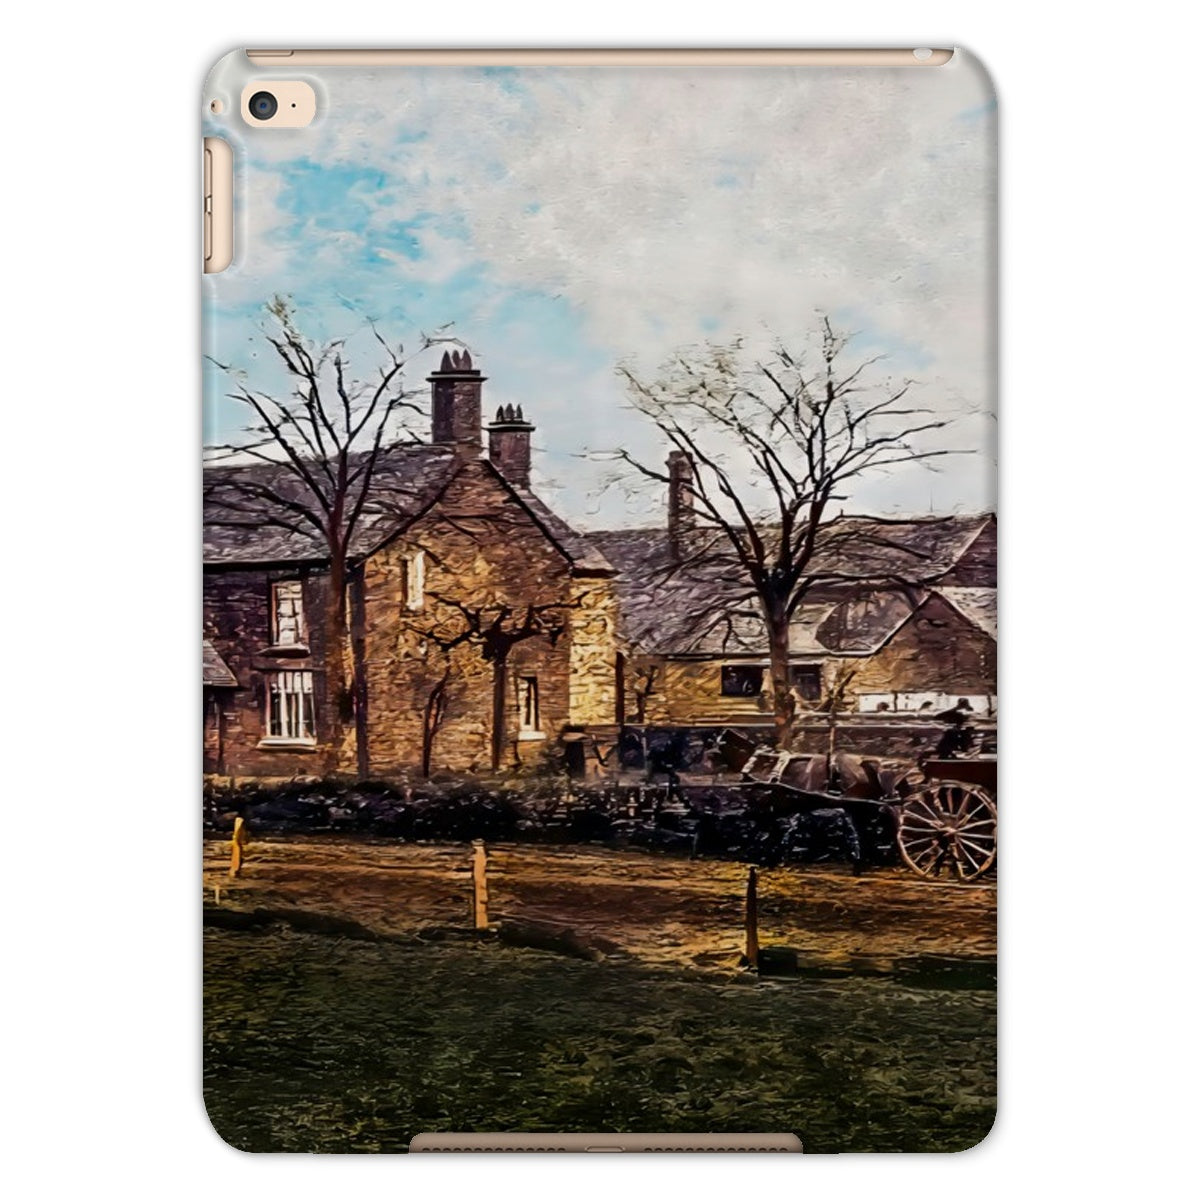 Abbey Farm, Abbey Hulton Tablet Cases